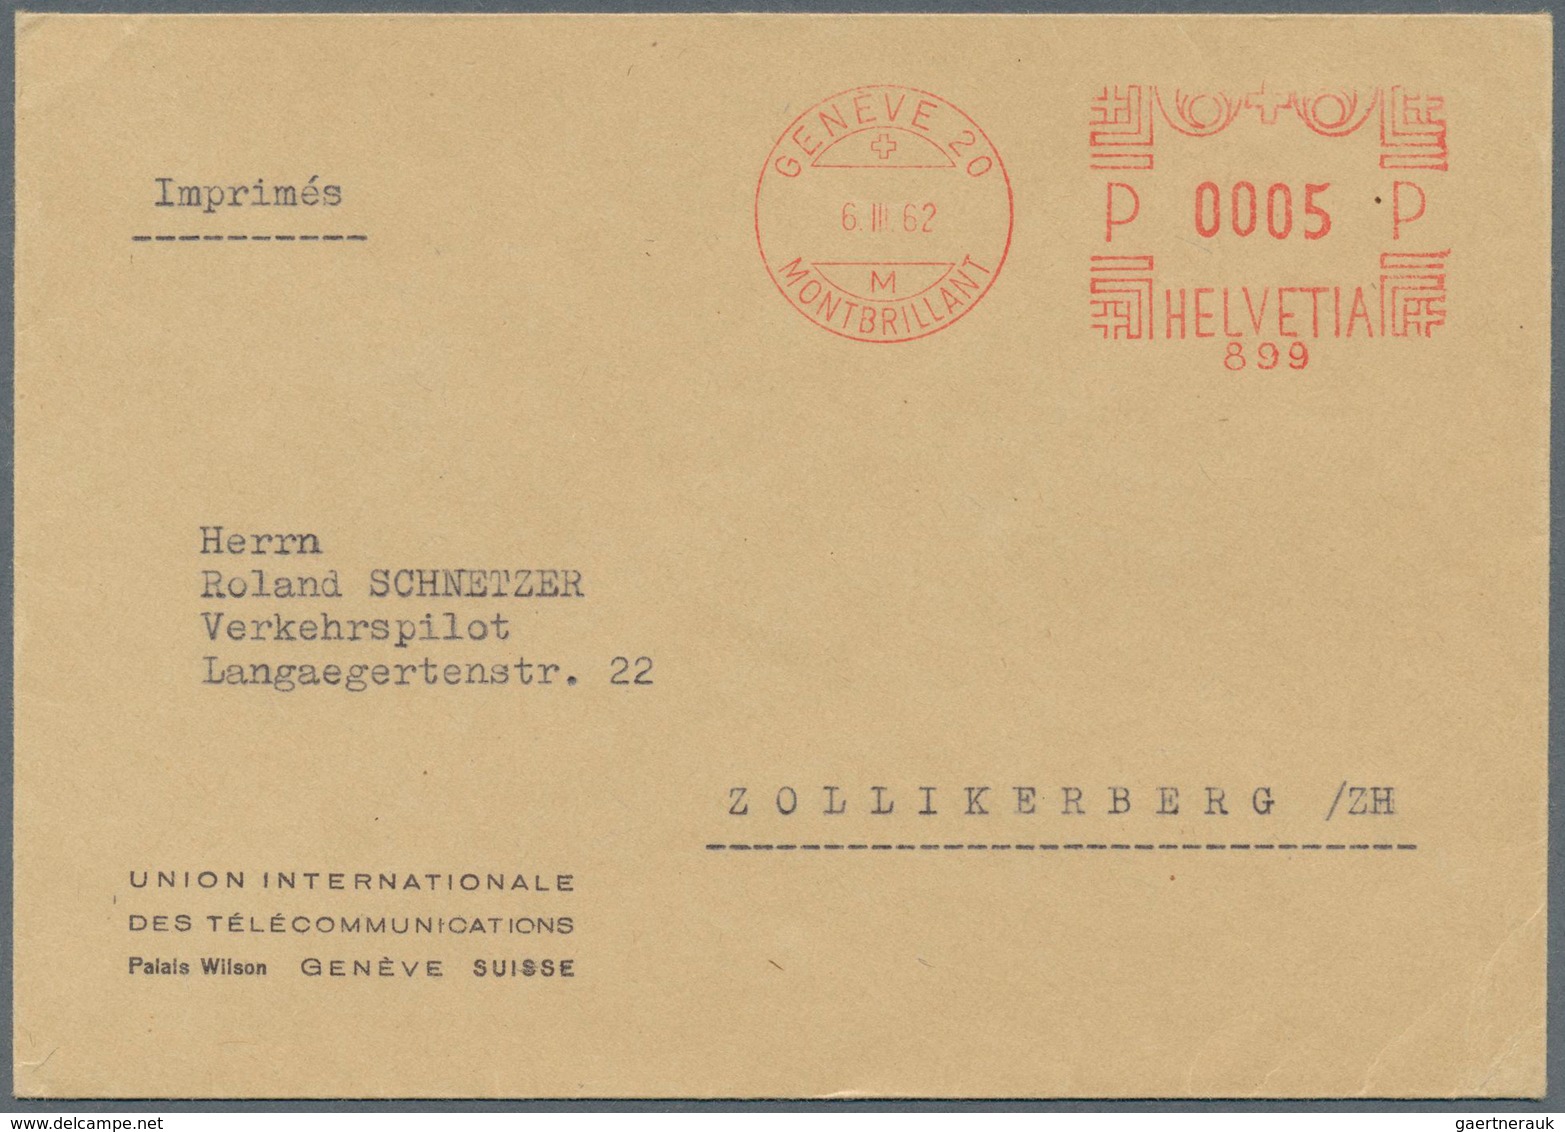 25502 Thematik: Rundfunk-Radio / broadcasting-radio: 1927/2003, umfangreiche Sammlung "Internationale Fern